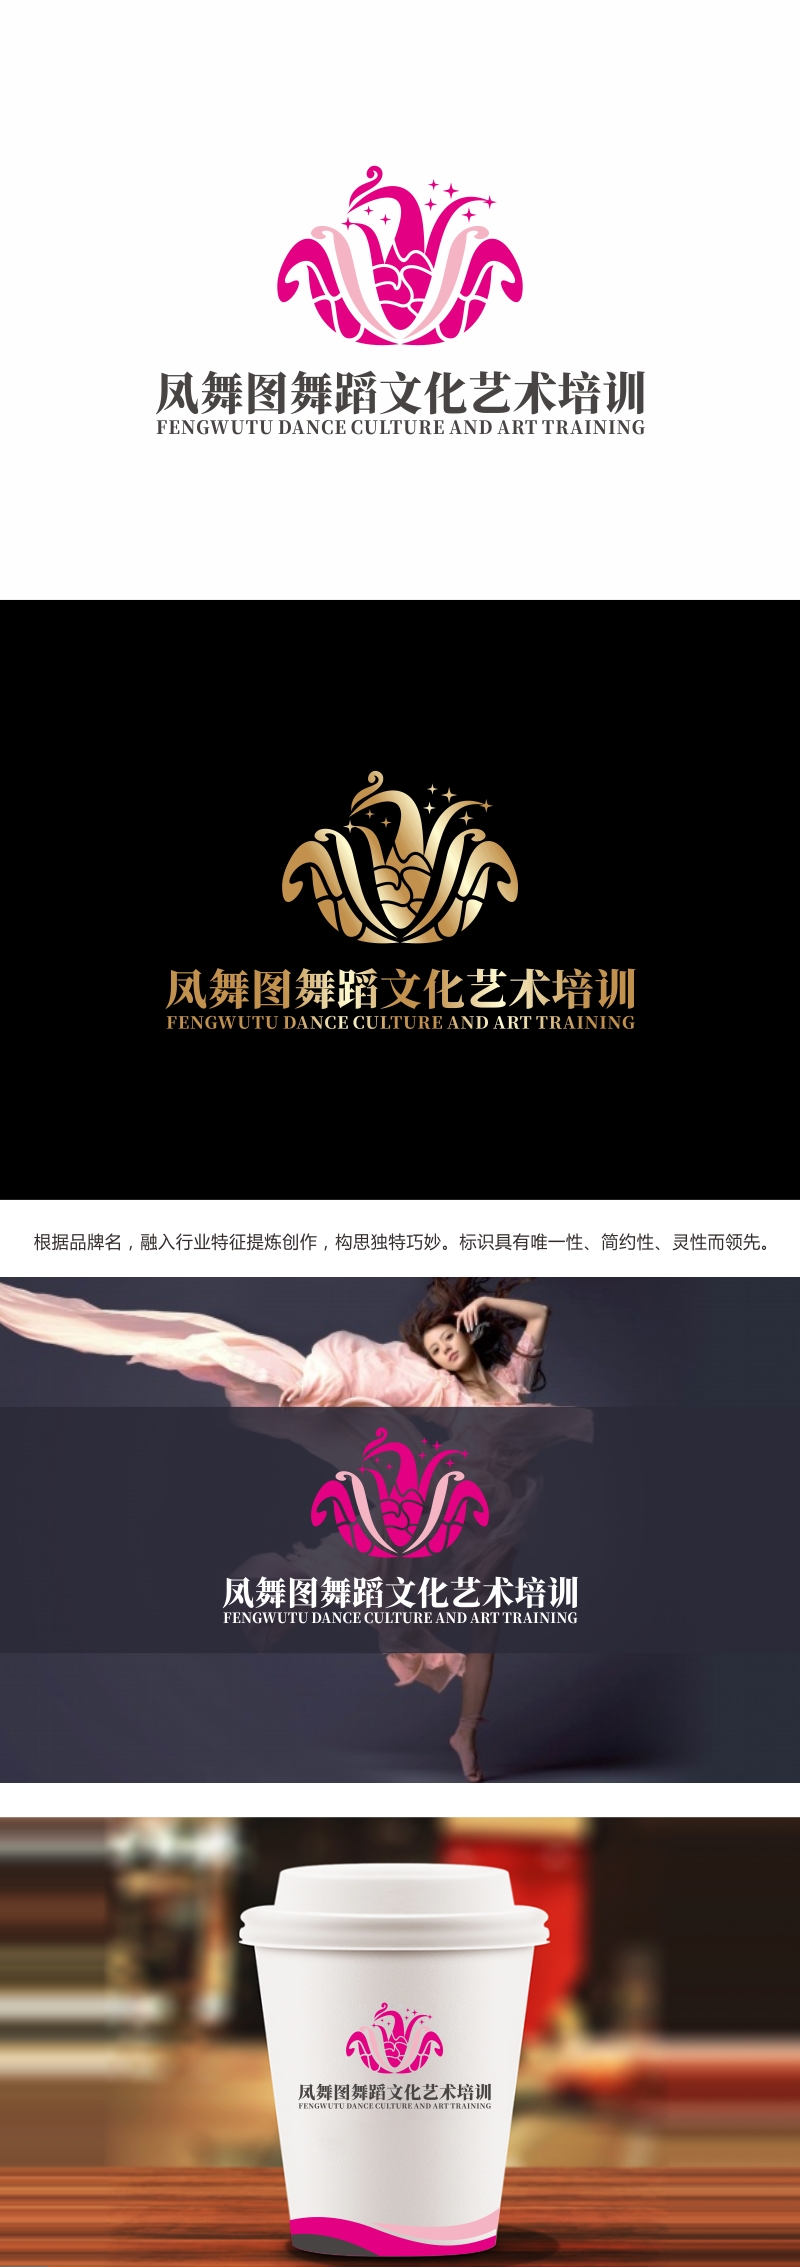 林思源的深圳市凤舞图舞蹈文化艺术培训有限公司logo设计